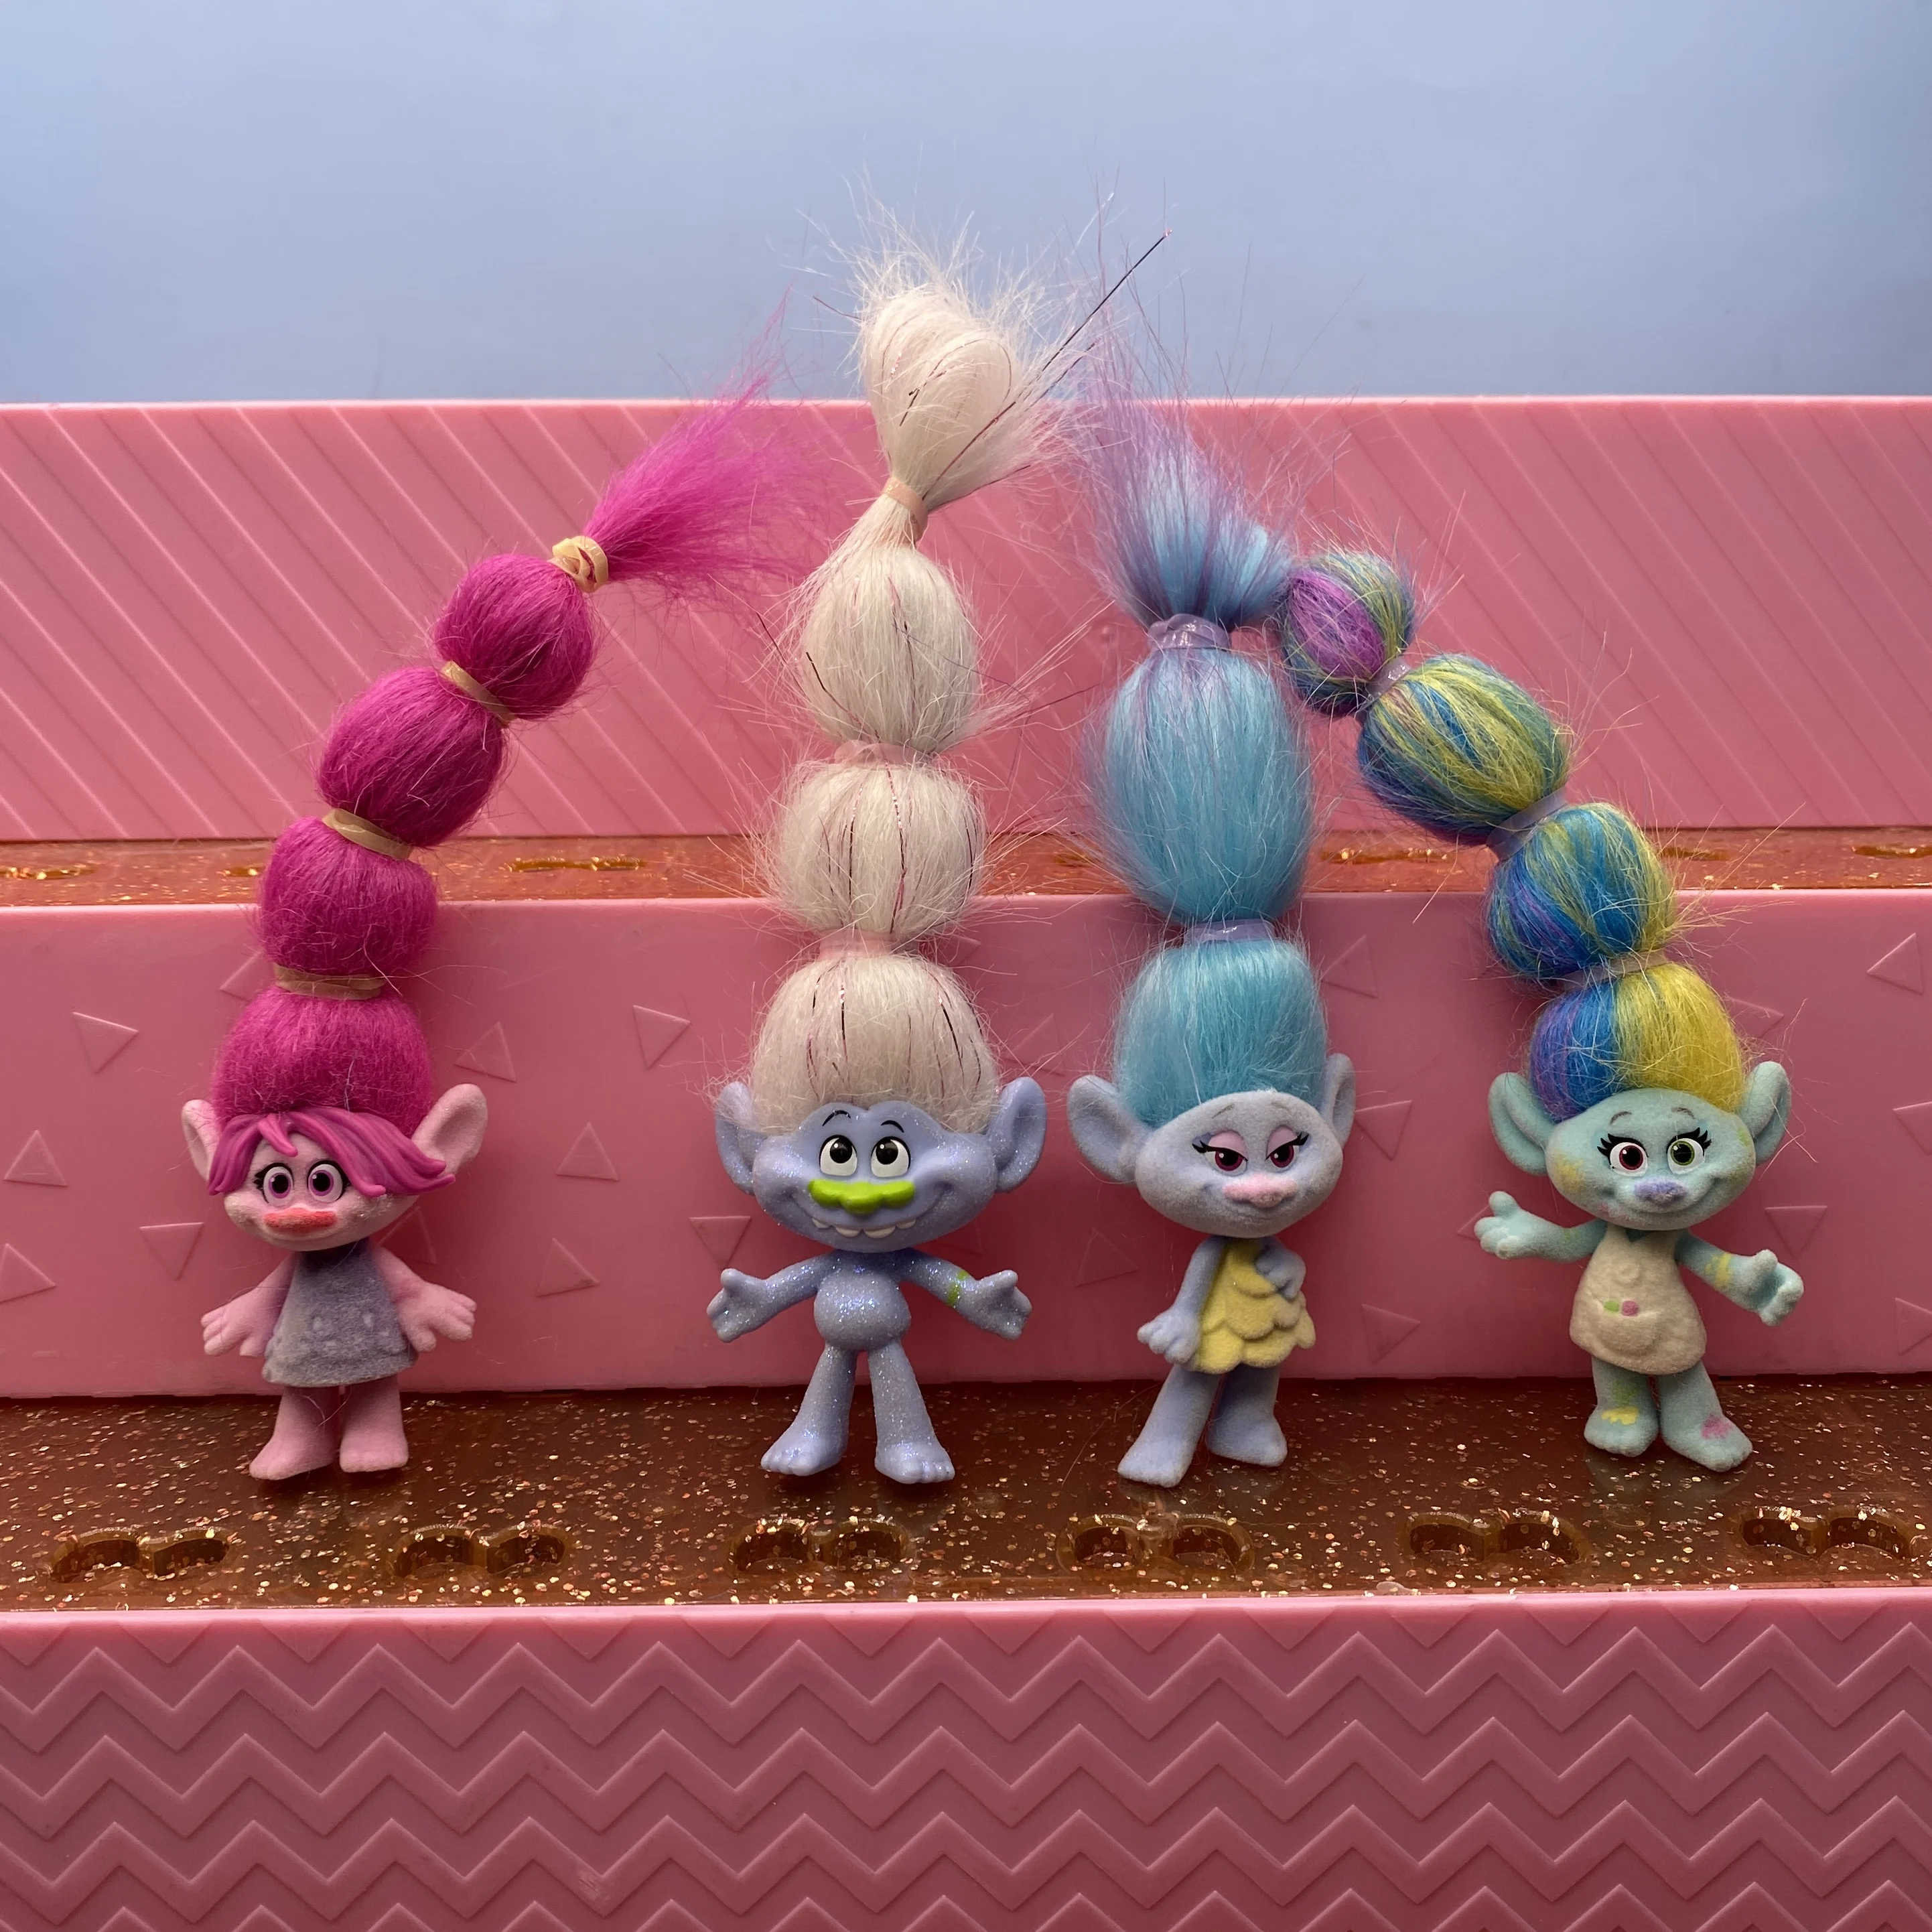 https://ae01.alicdn.com/kf/Ha34af1877d84447ba92d6aa53c8f08af4/Original-multi-style-magic-hair-fairy-magic-hair-long-hair-troll-doll-children-DIY-toy-gift.jpg